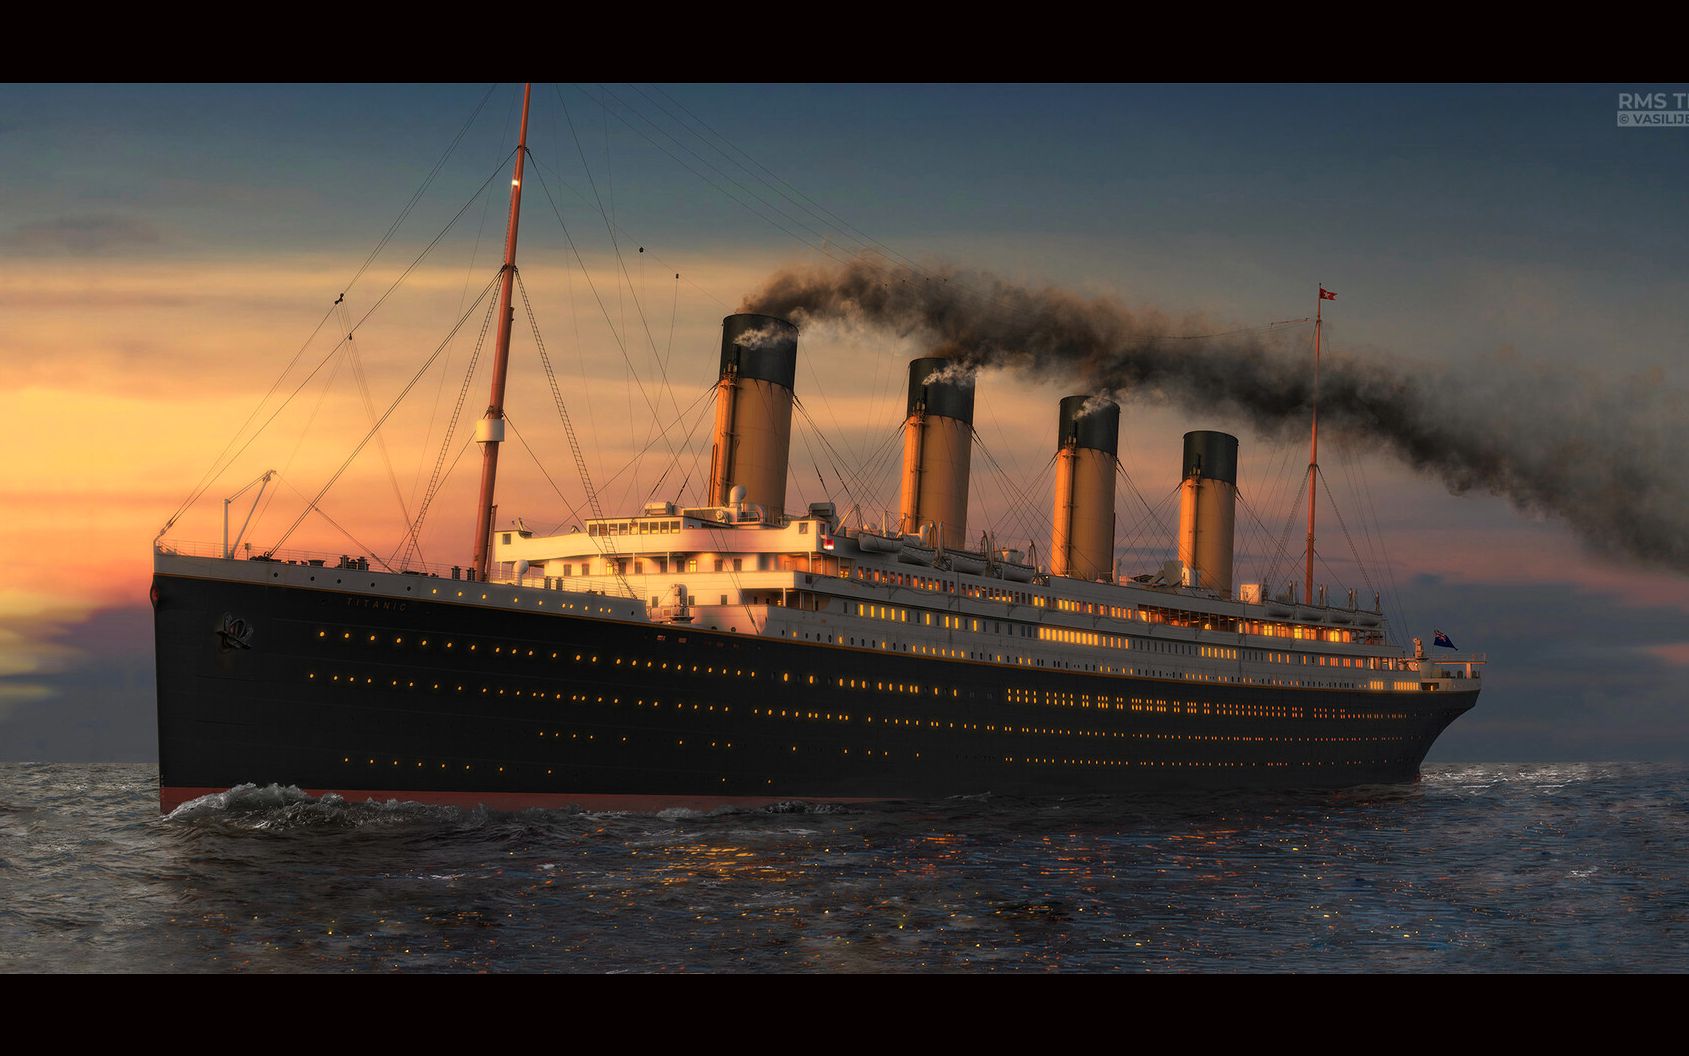 泰坦尼克号超清背景图图片